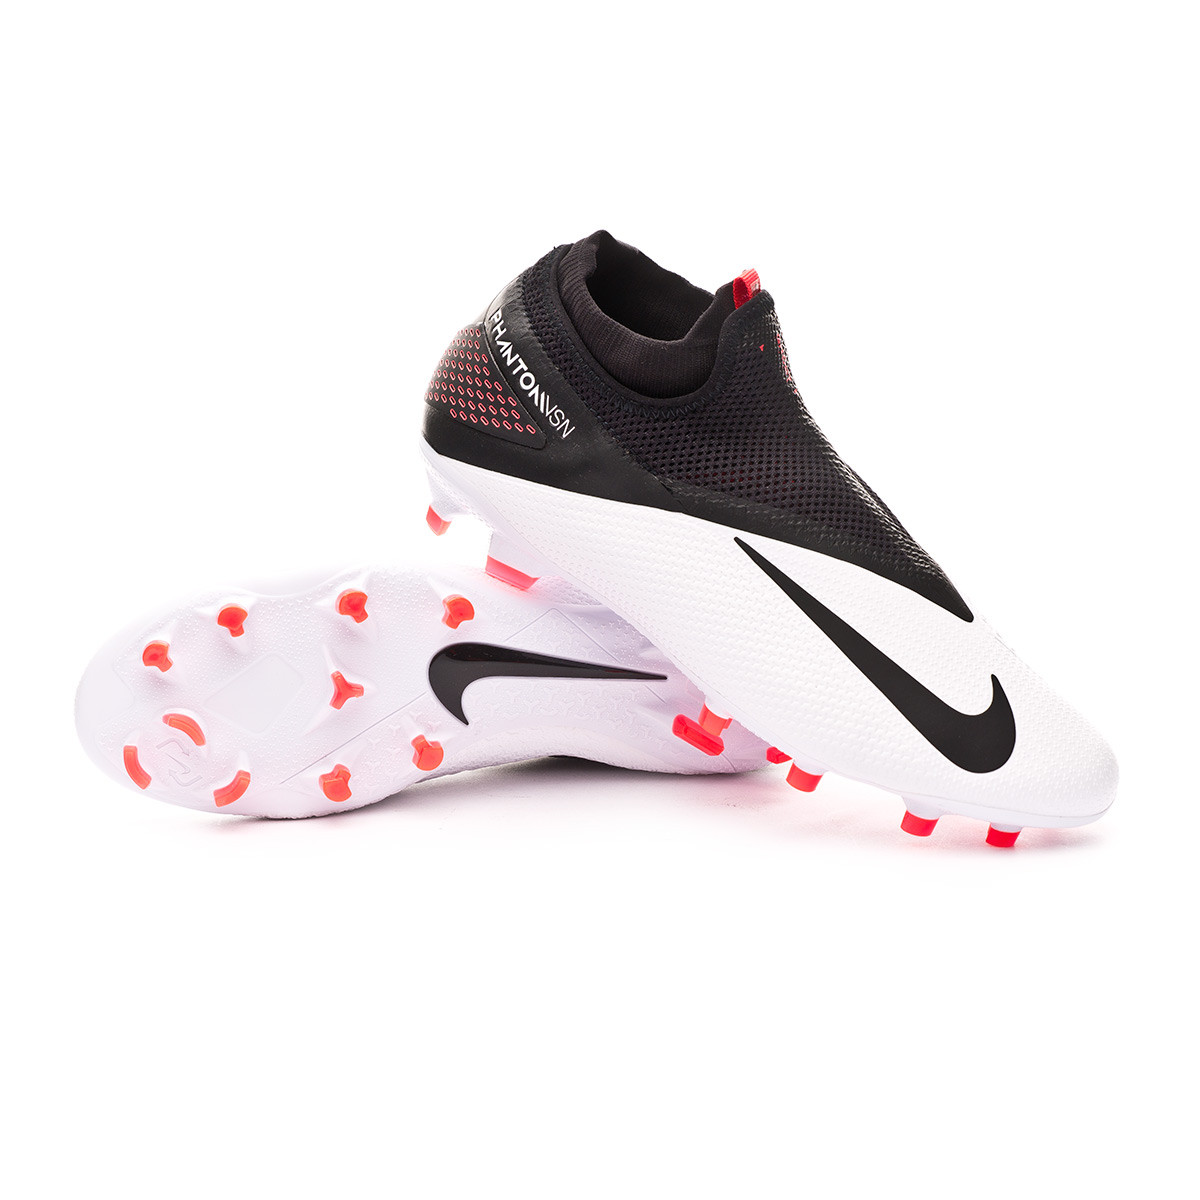 Bota de fútbol Nike Phantom Vision II Pro DF FG White-Black-Laser crimson -  Tienda de fútbol Fútbol Emotion